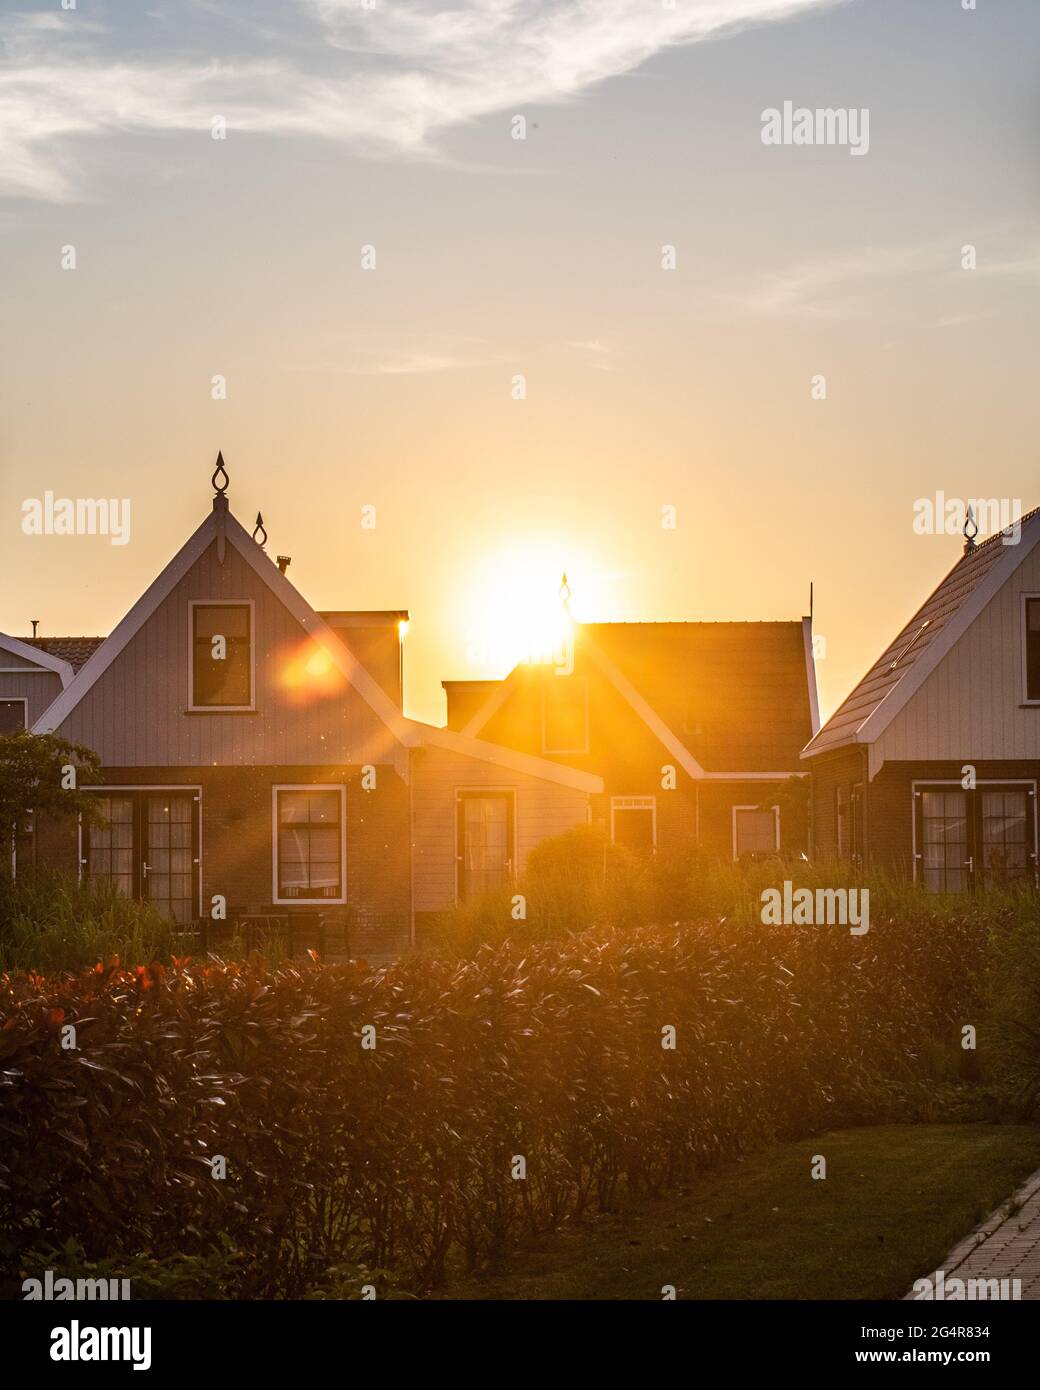 Coucher de soleil avec des maisons hollandaises typiques à Uitdam, aux pays-Bas Banque D'Images